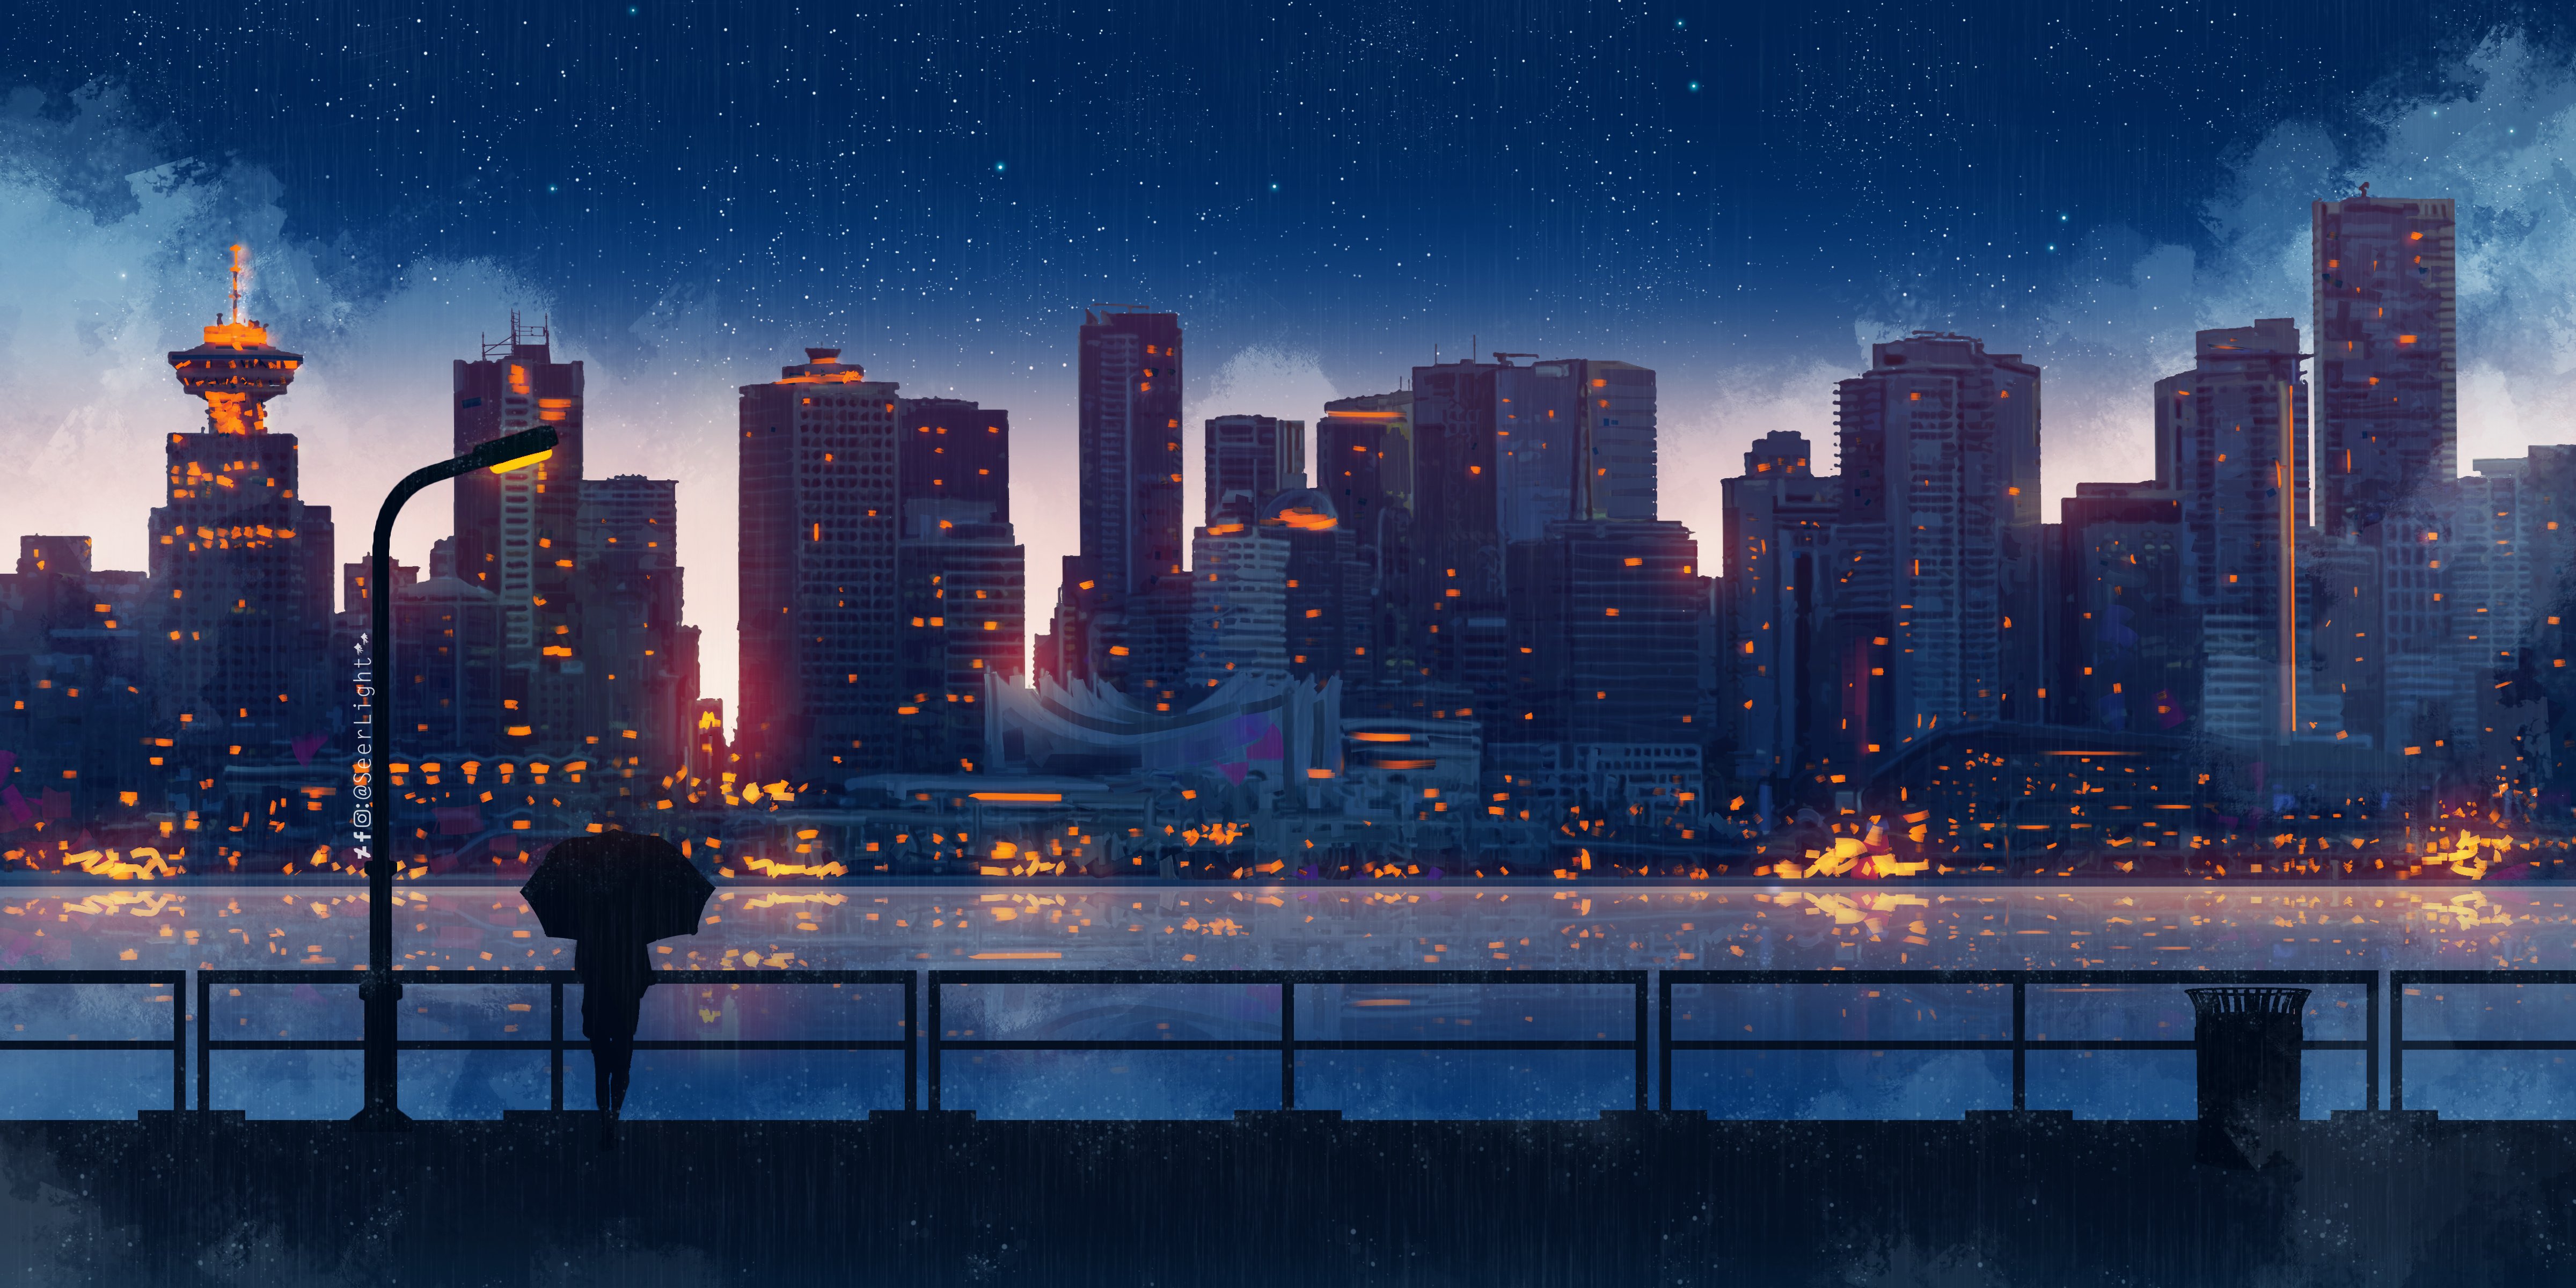 Fondos de pantalla Ciudad por la noche estilo anime